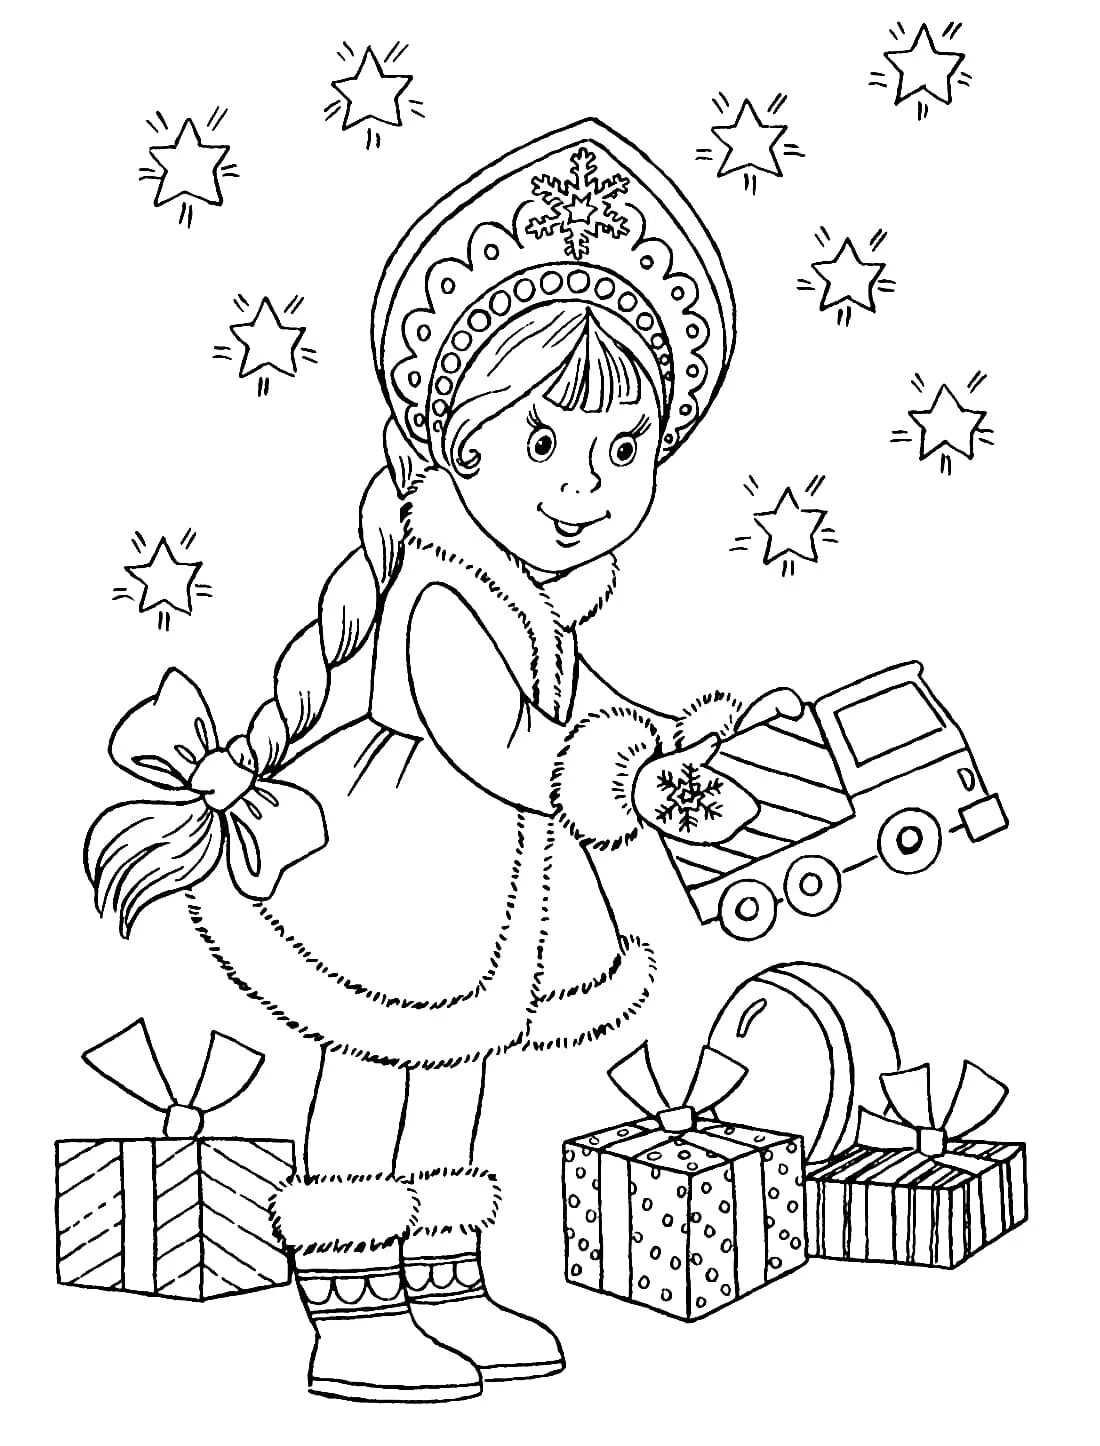 Новый год распечатанная. Раскраска "Снегурочка". Снегурочка раскраска для детей. Раскраска Новогодняя для детей. Новогодние раскраски Снегурочка.